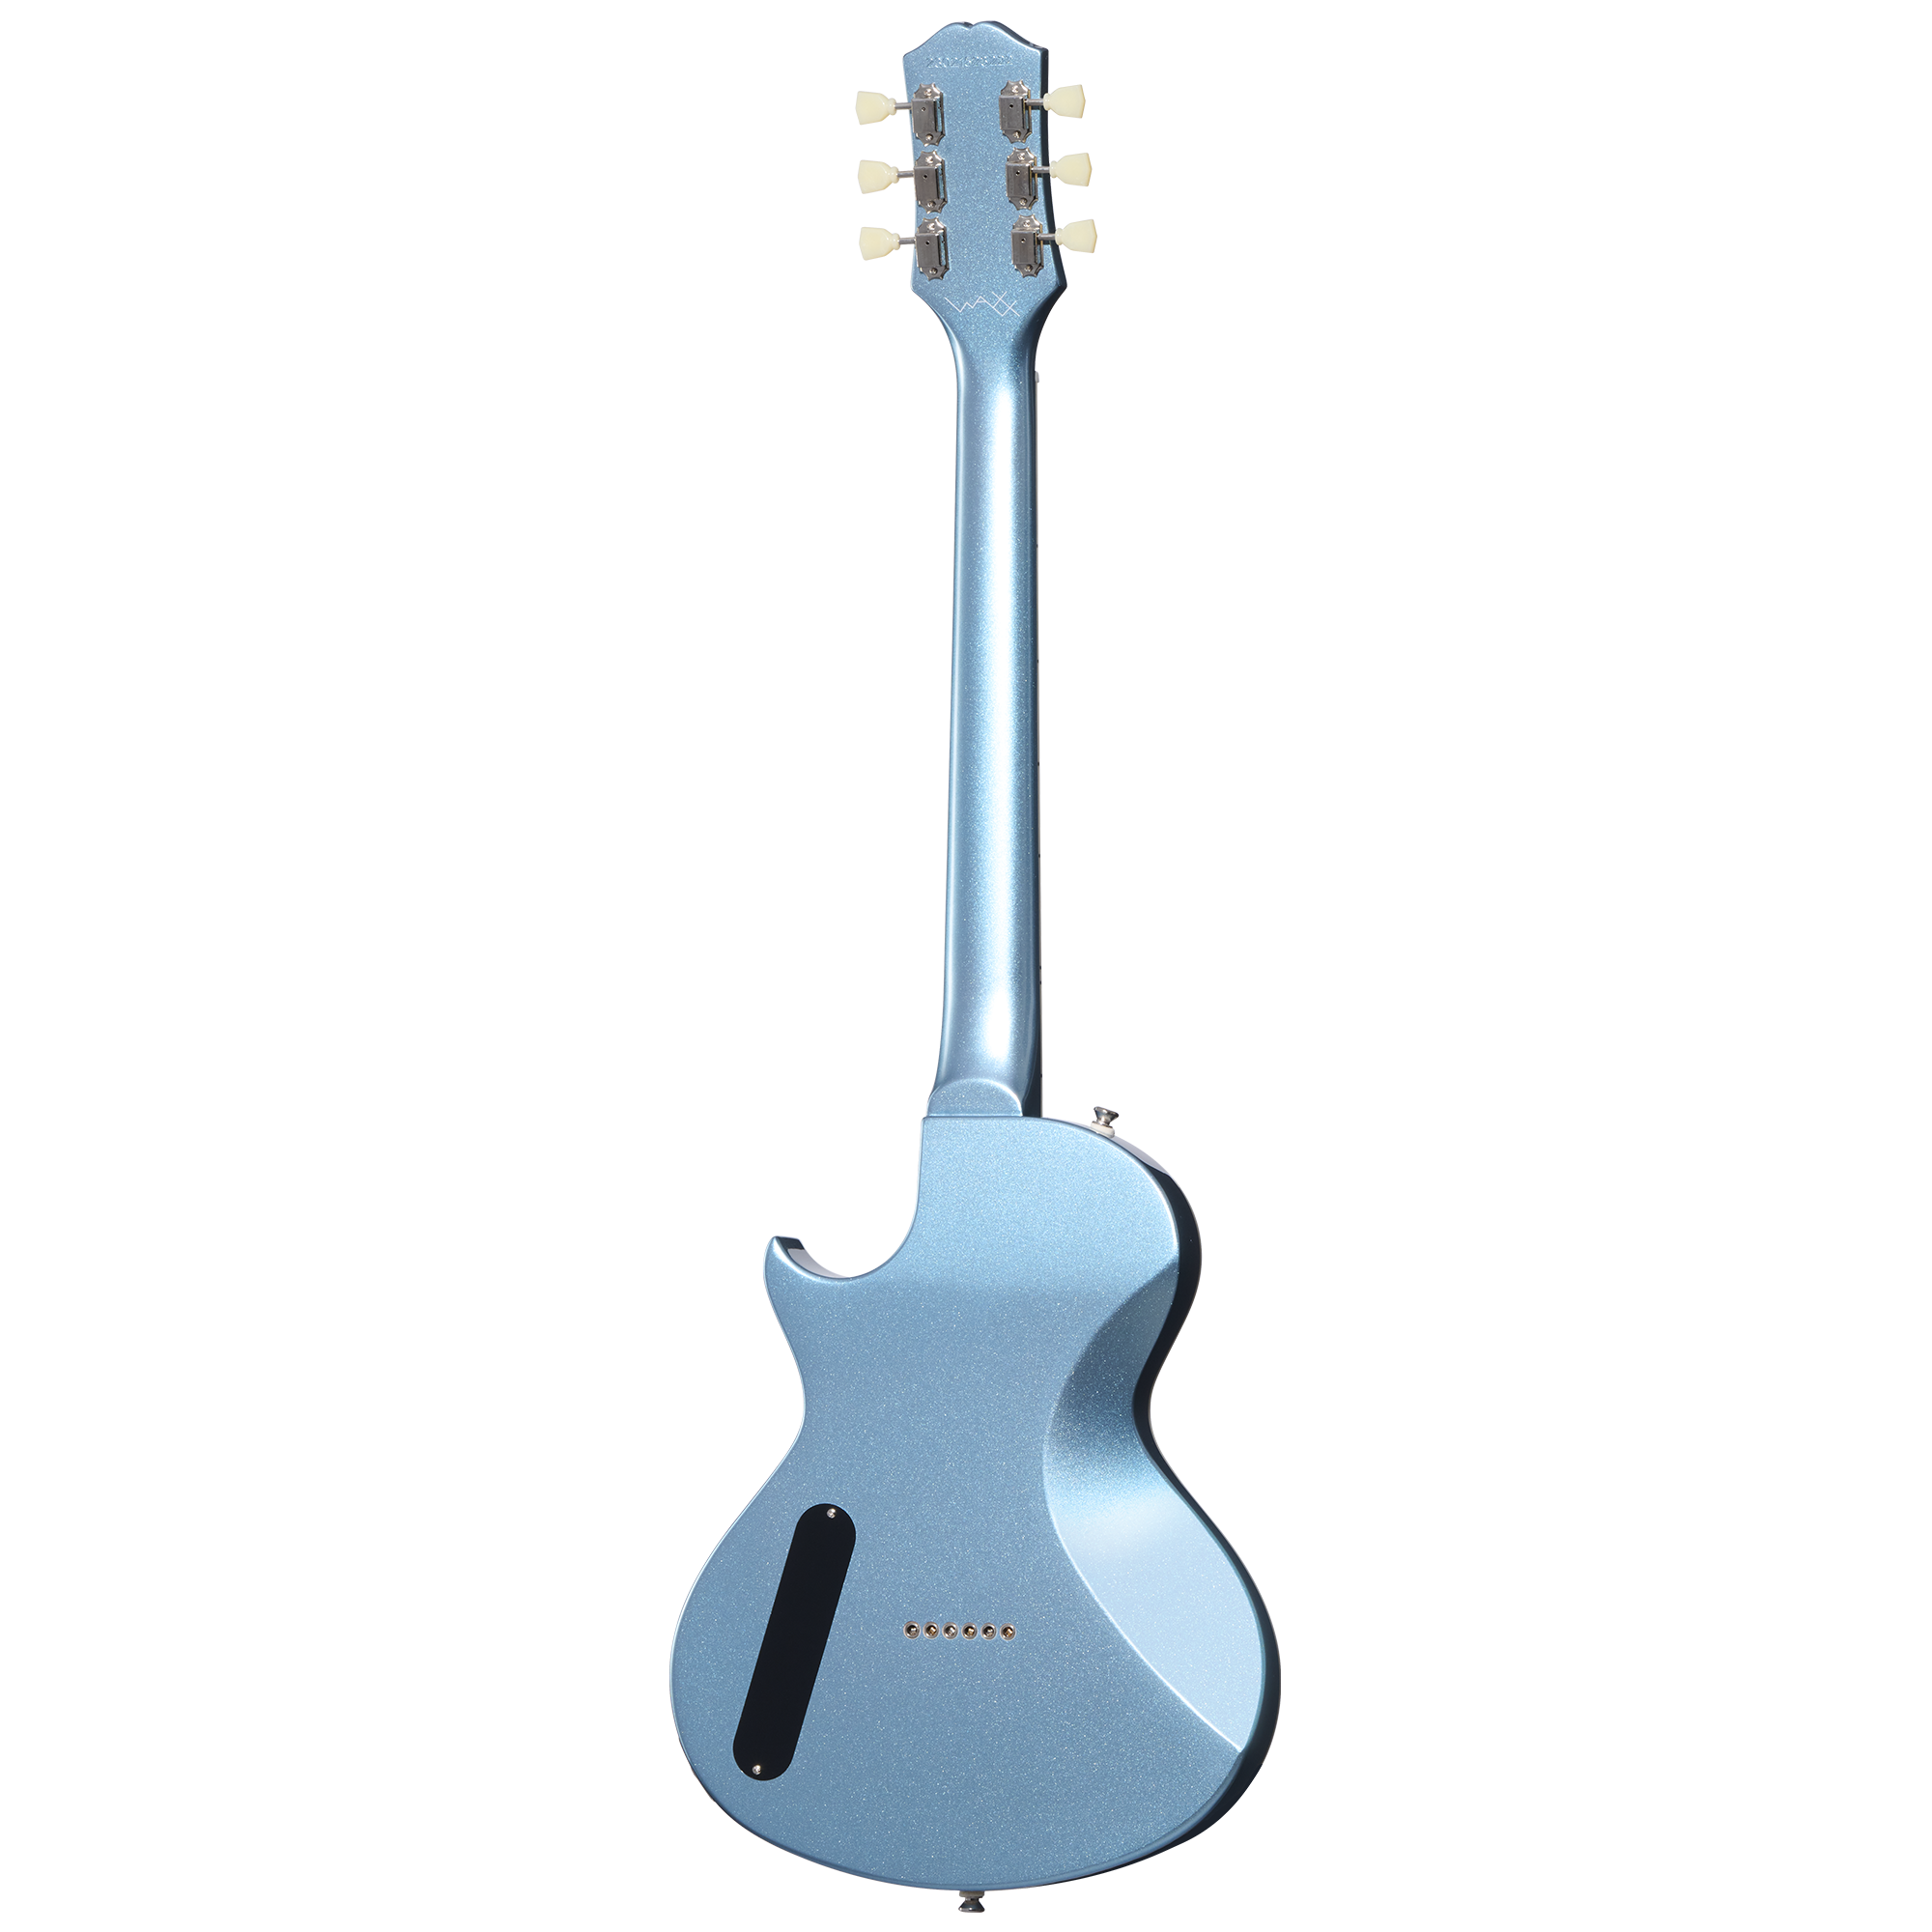 Epiphone Nighthawk Studio Waxx Hh Ht Lau - Pelham Blue - Guitare Électrique Single Cut - Variation 1